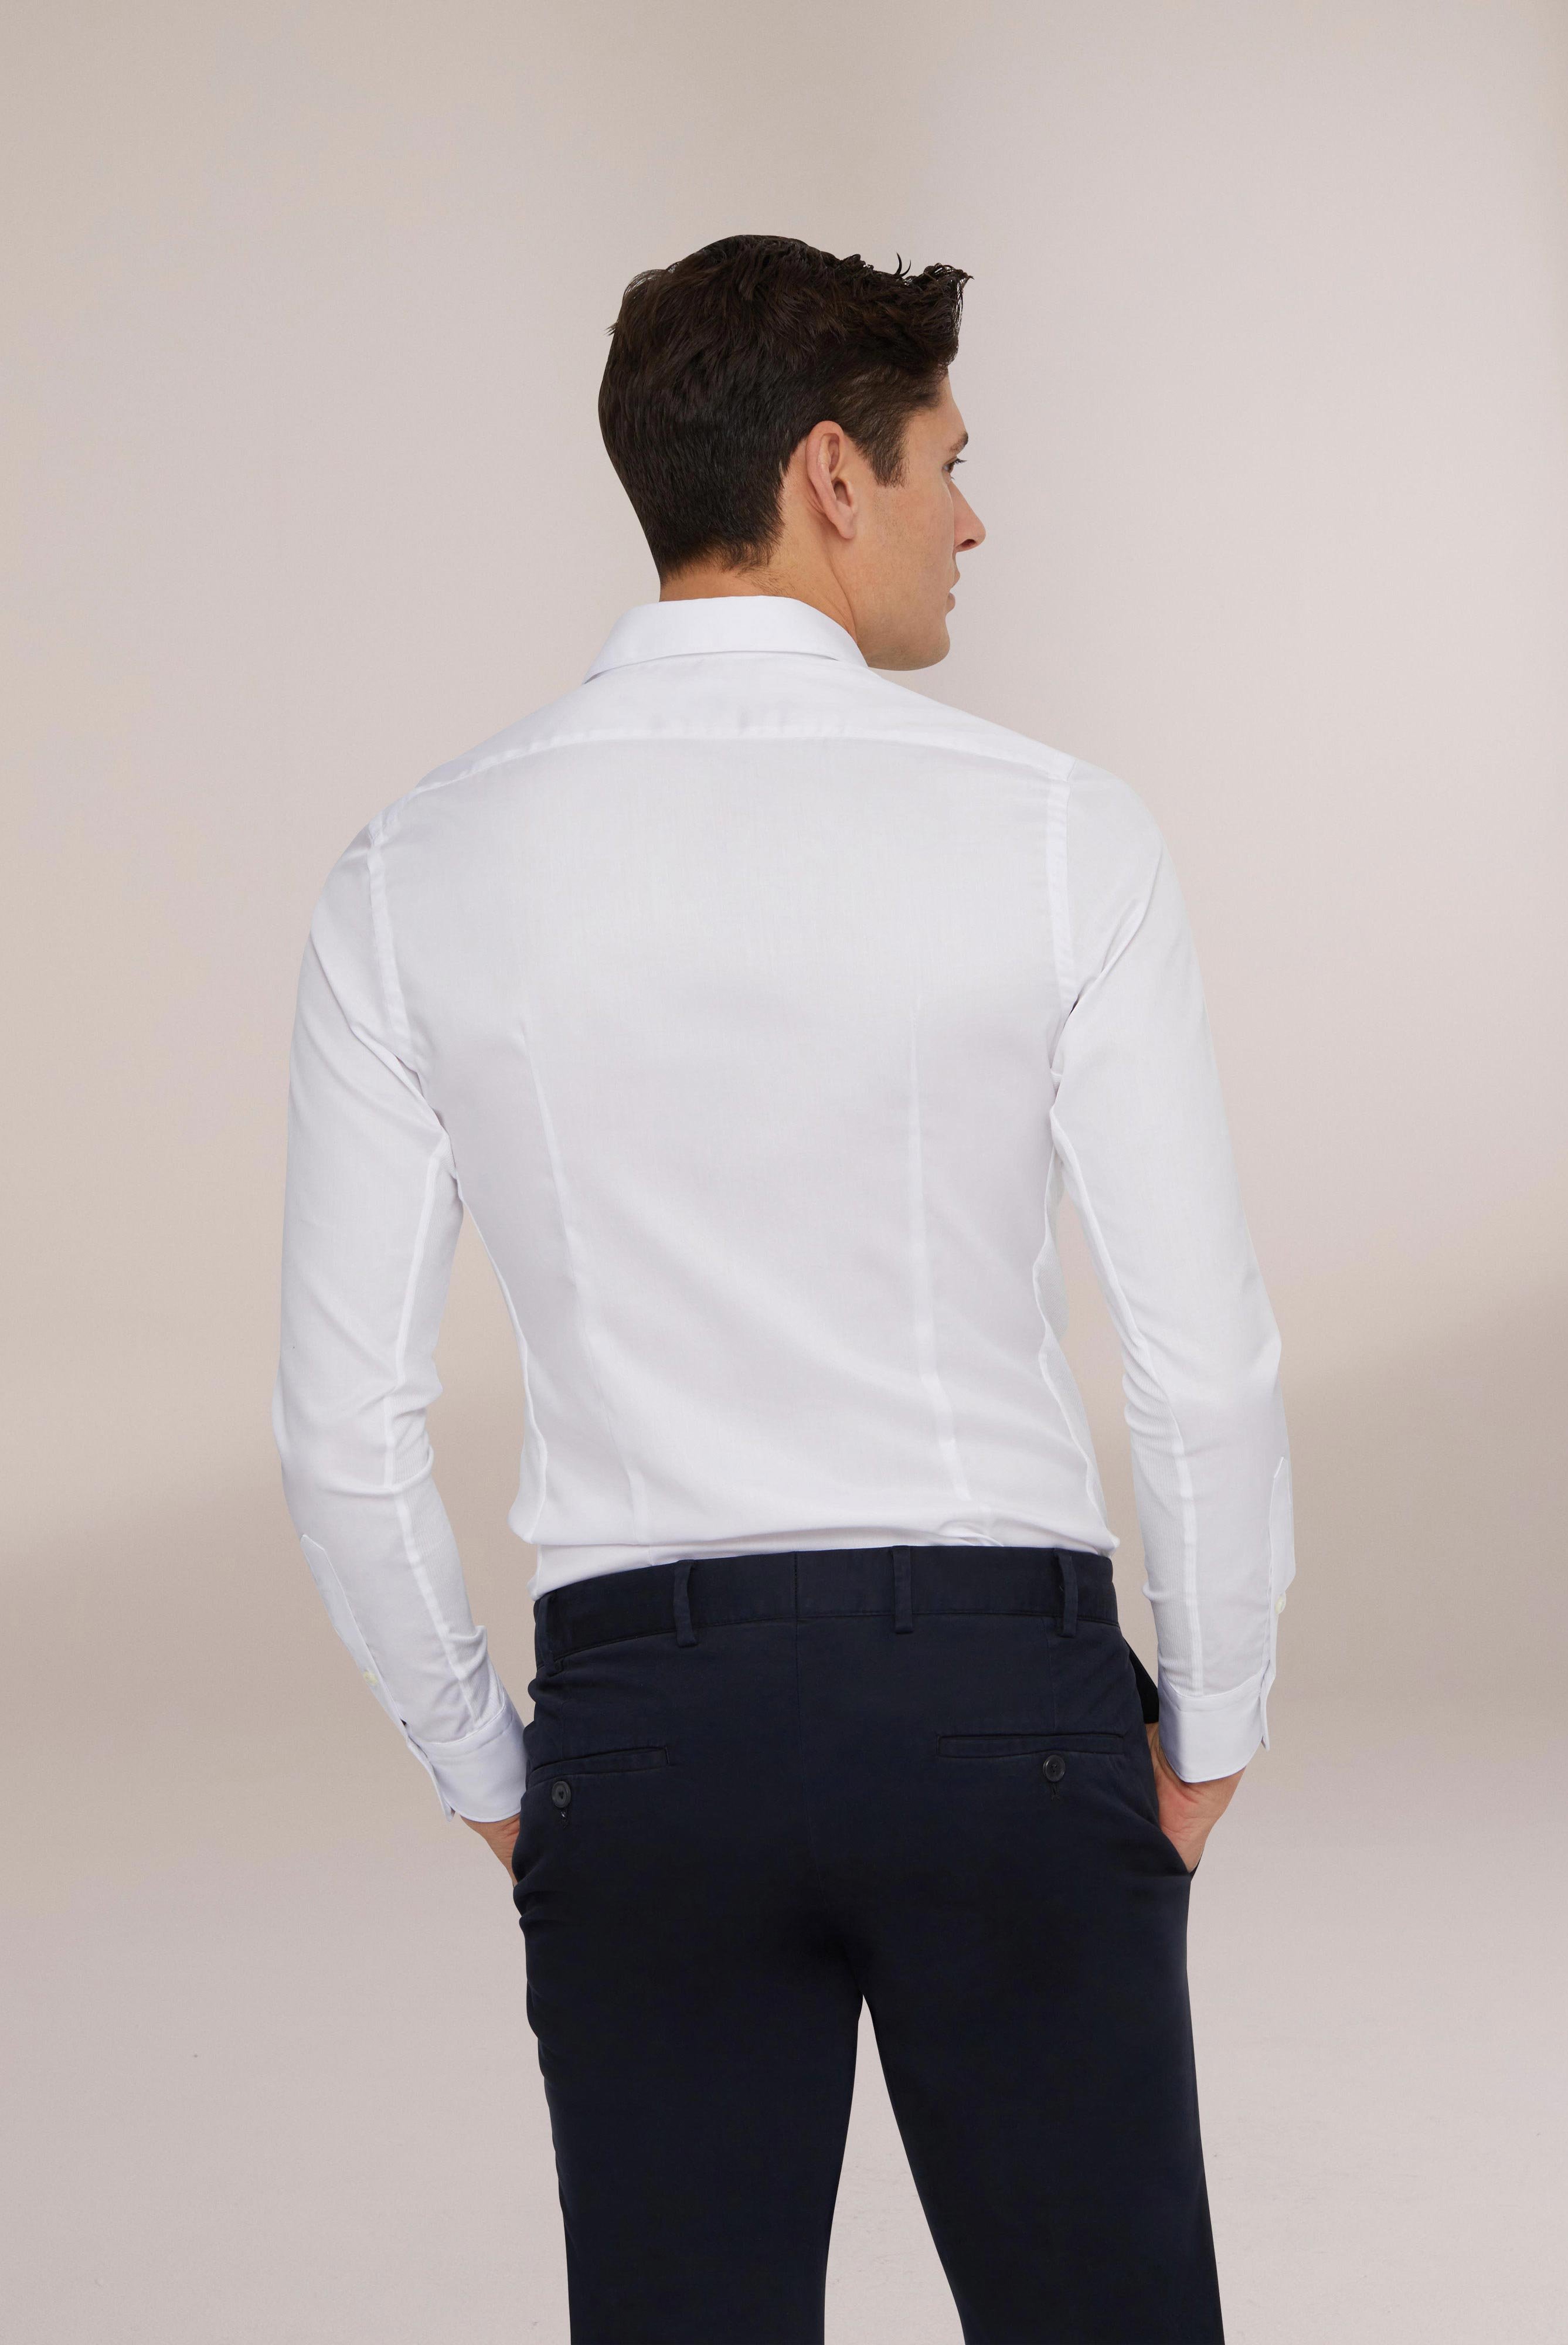 Bügelleichte Hemden+Bügelfreies Hybridshirt mit Jerseyeinsatz Slim Fit+20.2553.0F.132241.000.38